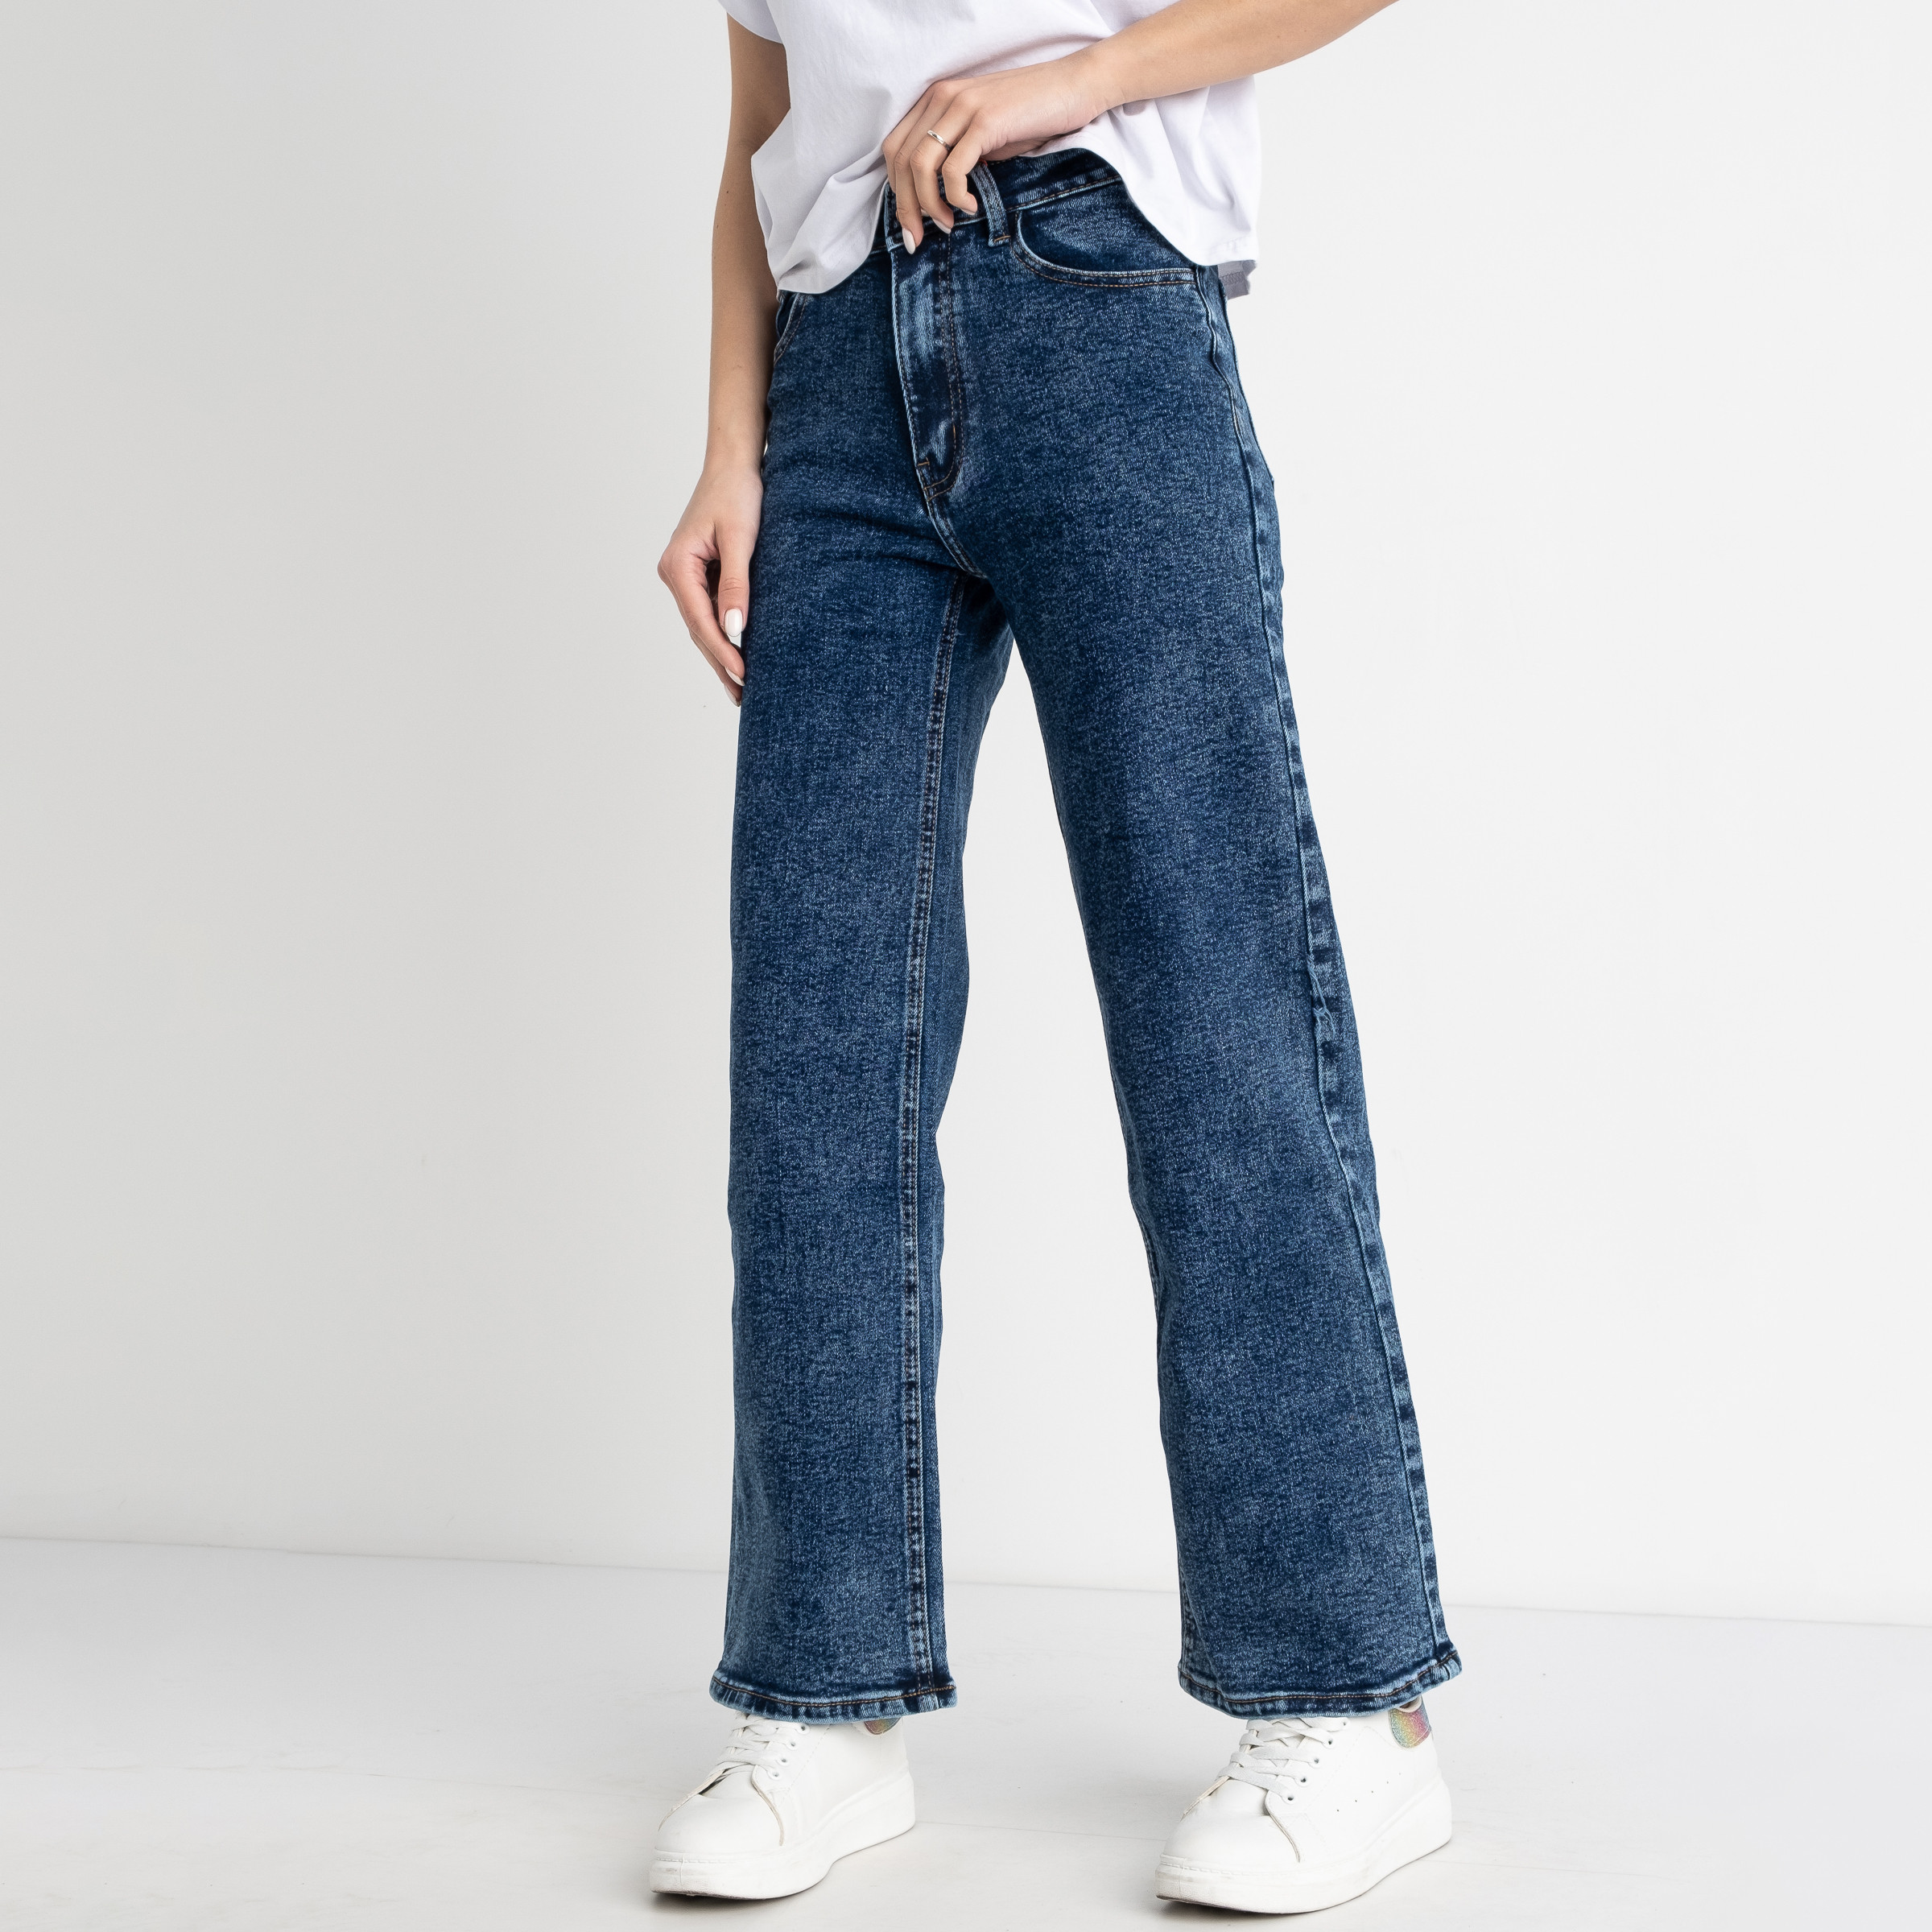 0680-8 HR Relucky джинсы-кюлоты женские синие стрейчевые( 6 ед. размеры : 25.26.27.28.29.30)